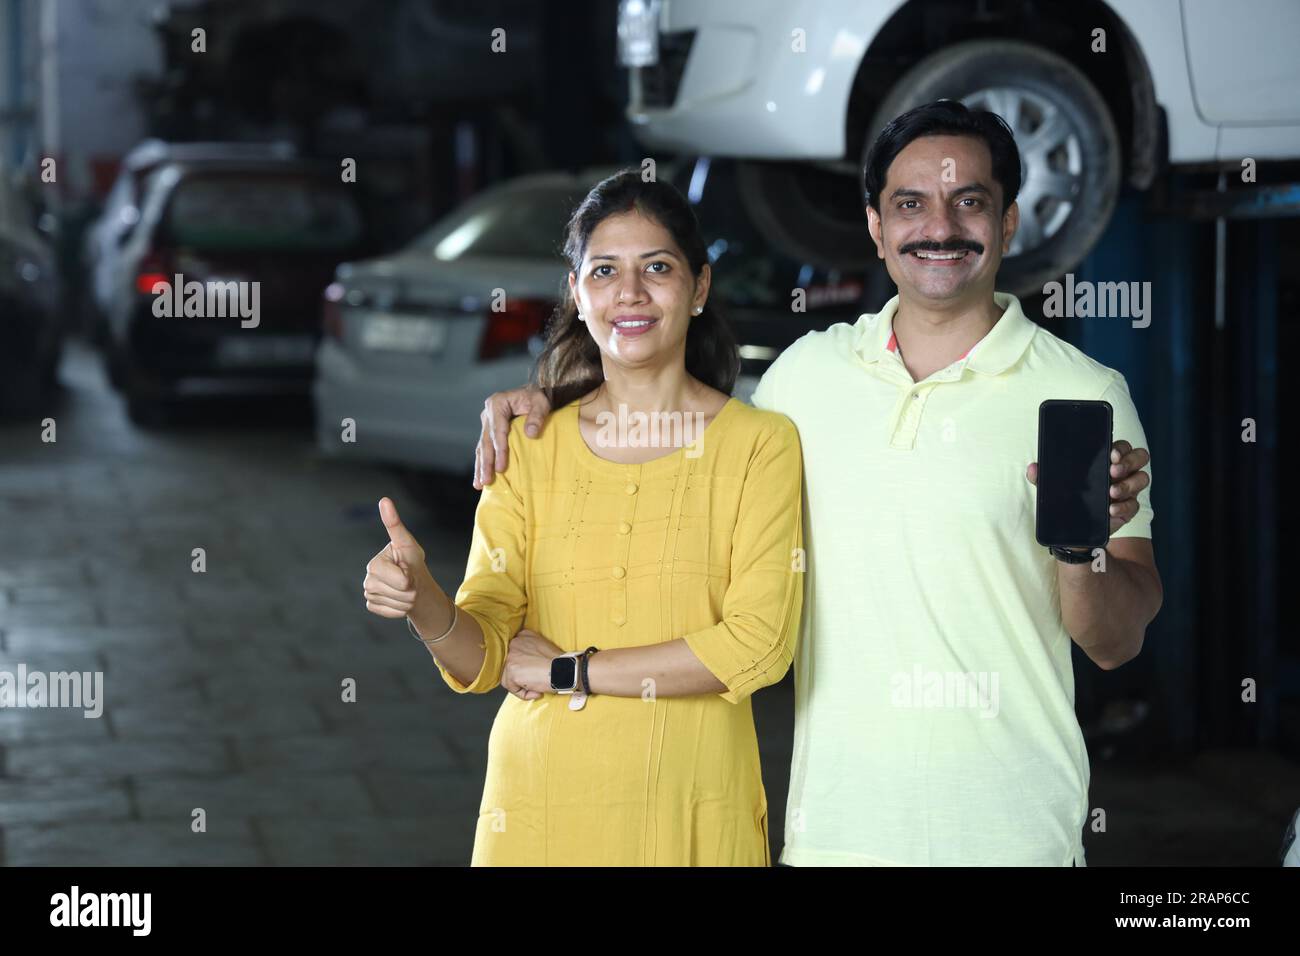 Indische zufriedene Kunden zeigen Daumen hoch, weil sie das Fahrzeug ehrlich repariert haben. Darstellung des Kundenvertrauens und der Kundenzufriedenheit gegenüber der Tankstelle Stockfoto